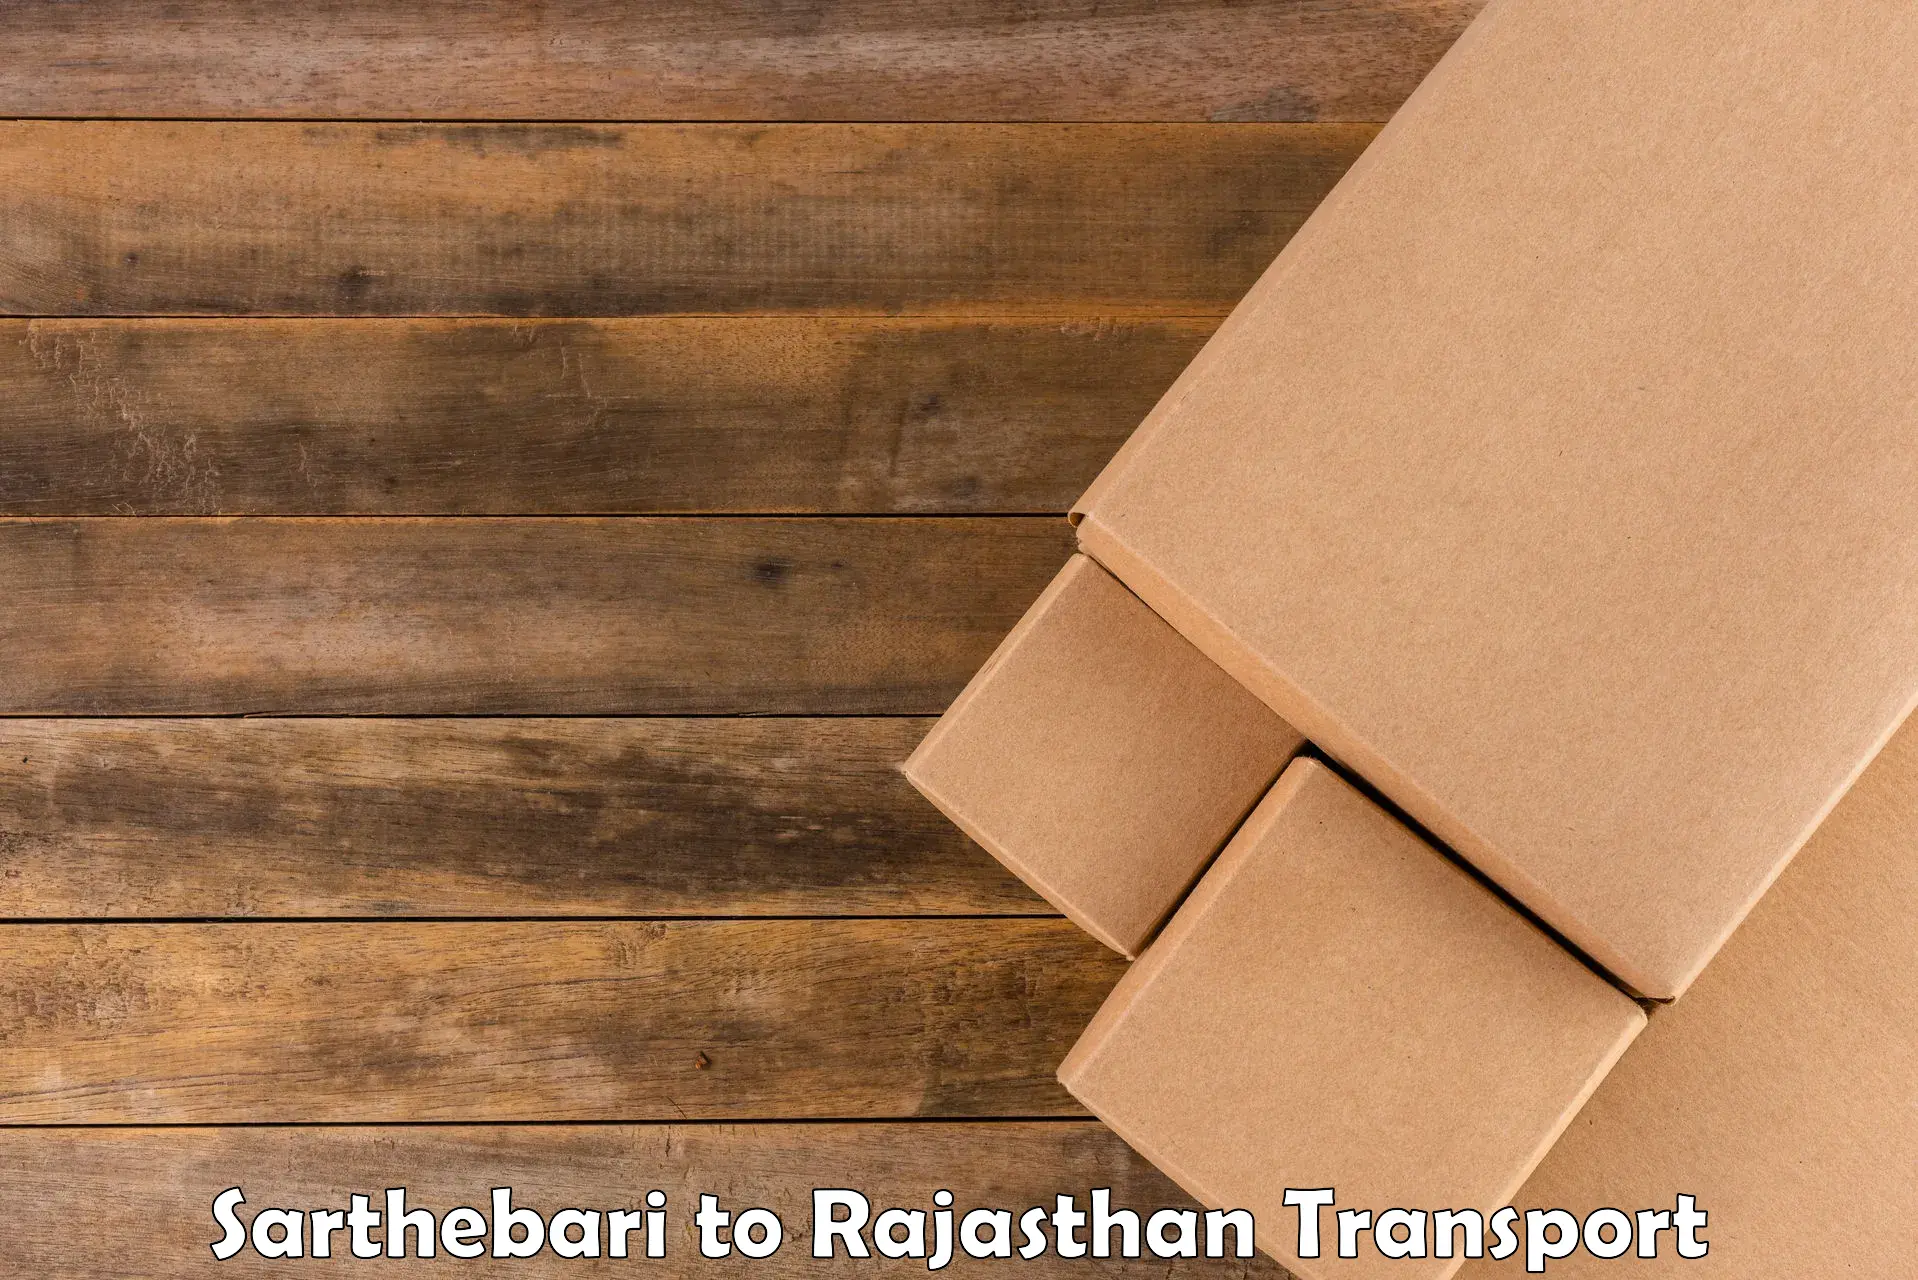 Online transport service Sarthebari to Bhilwara